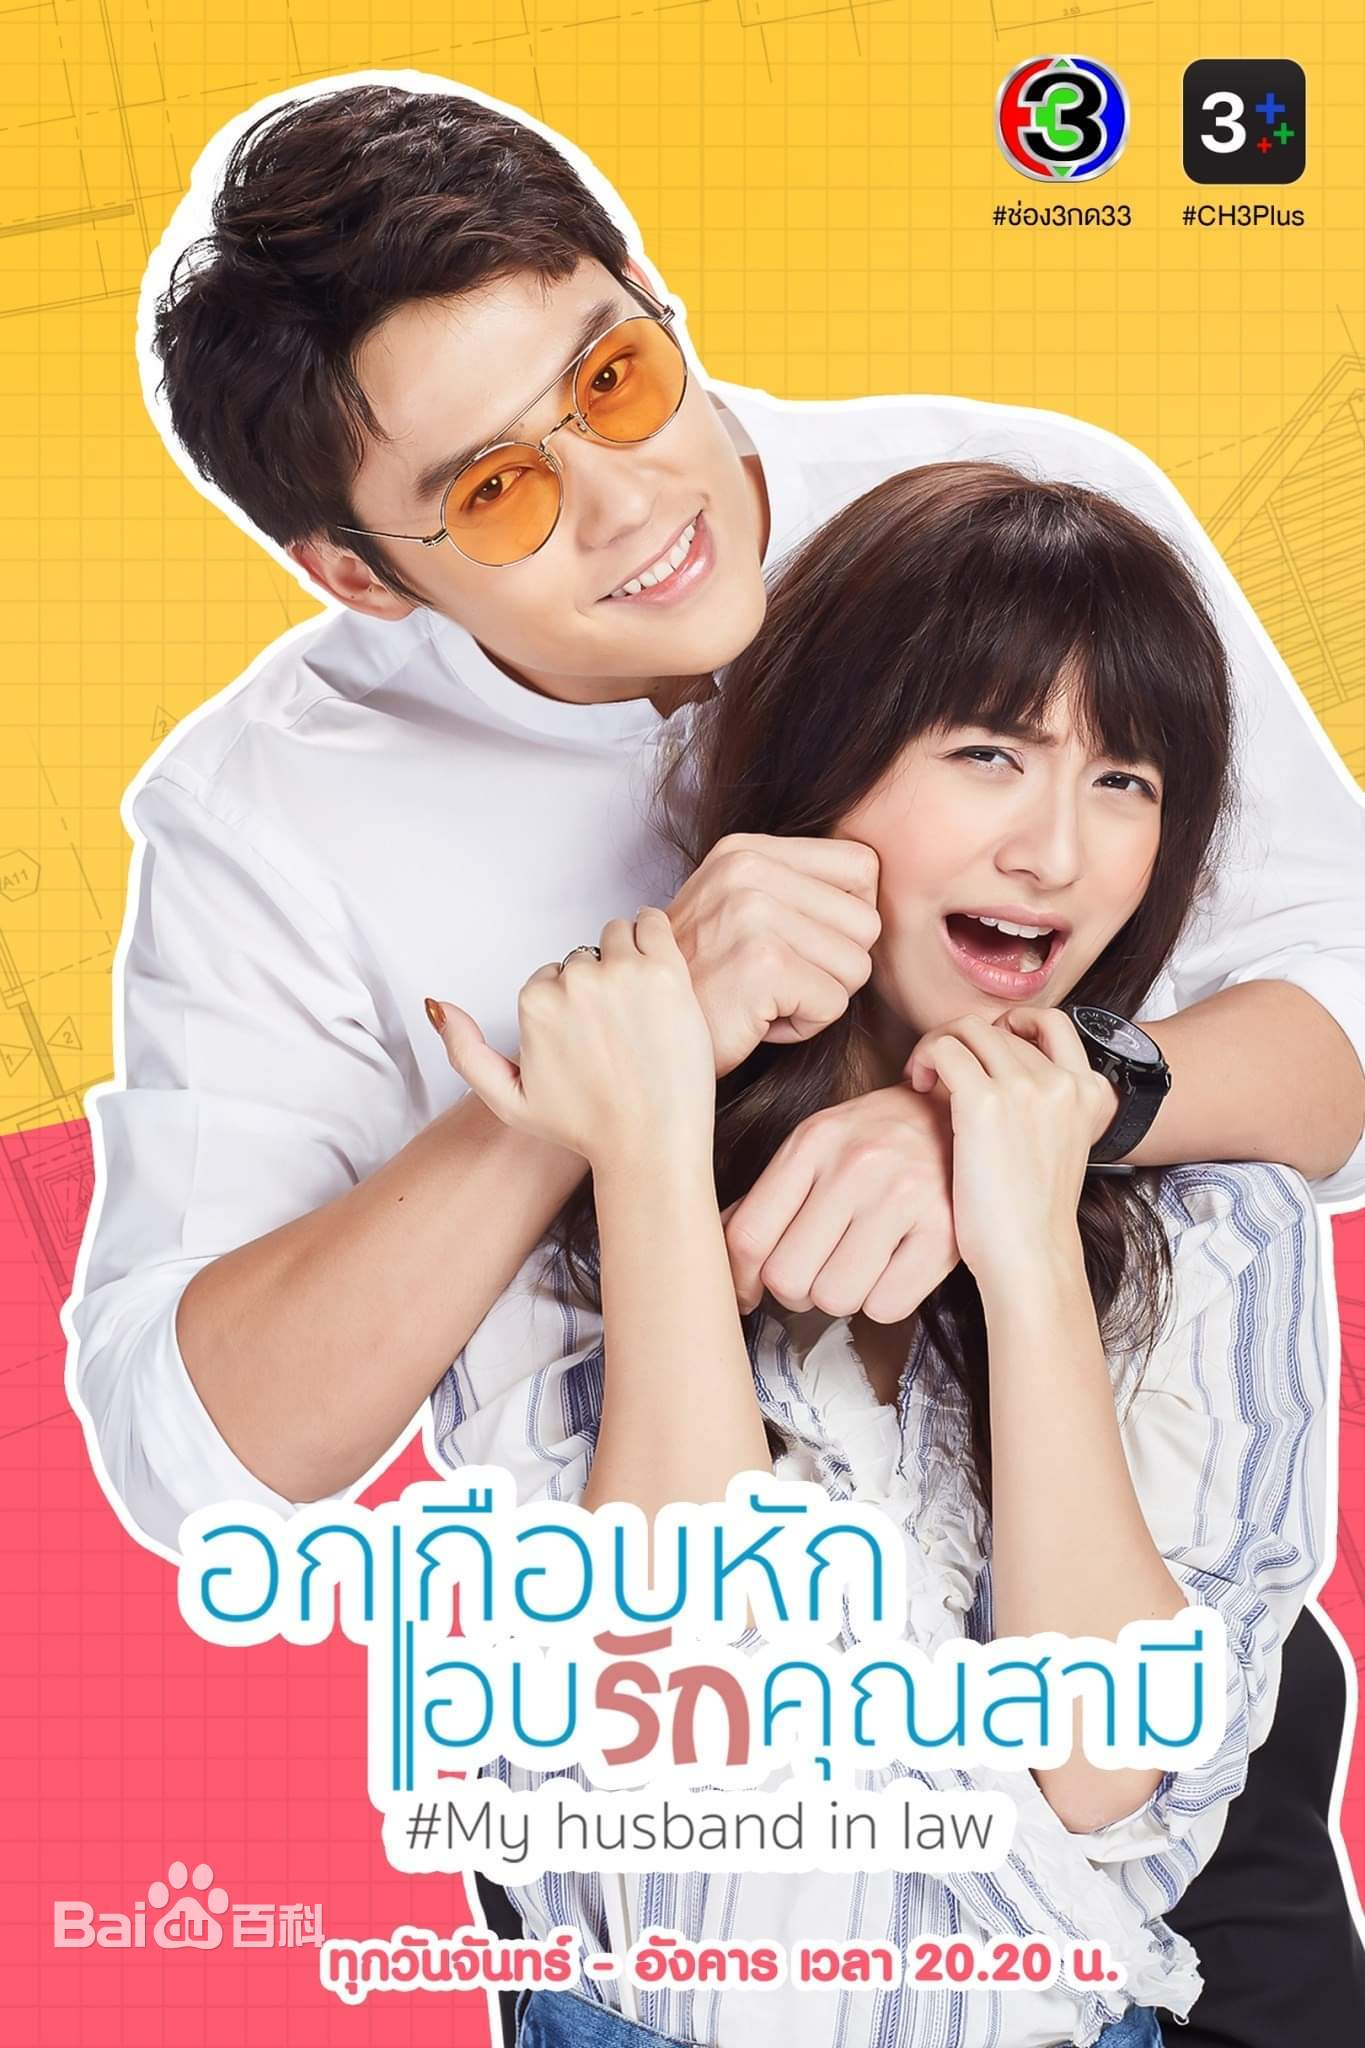 法定丈夫泰语封面图片